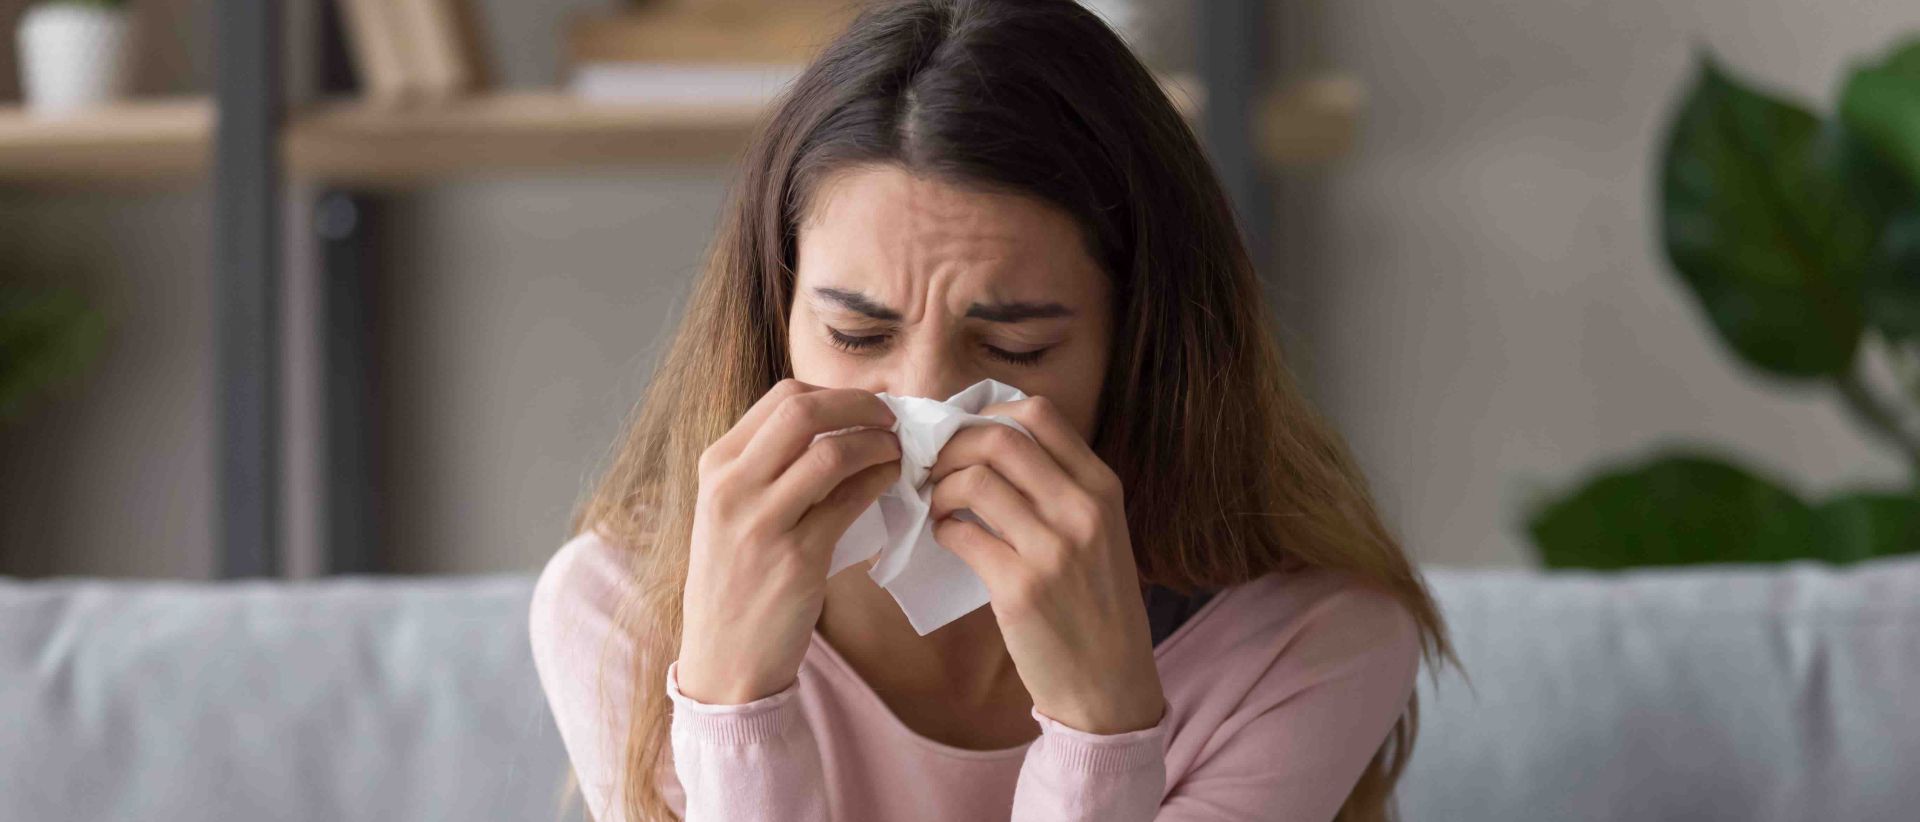 Frau mit Allergie gegen Hausstaubmilben sitzt auf Sofa